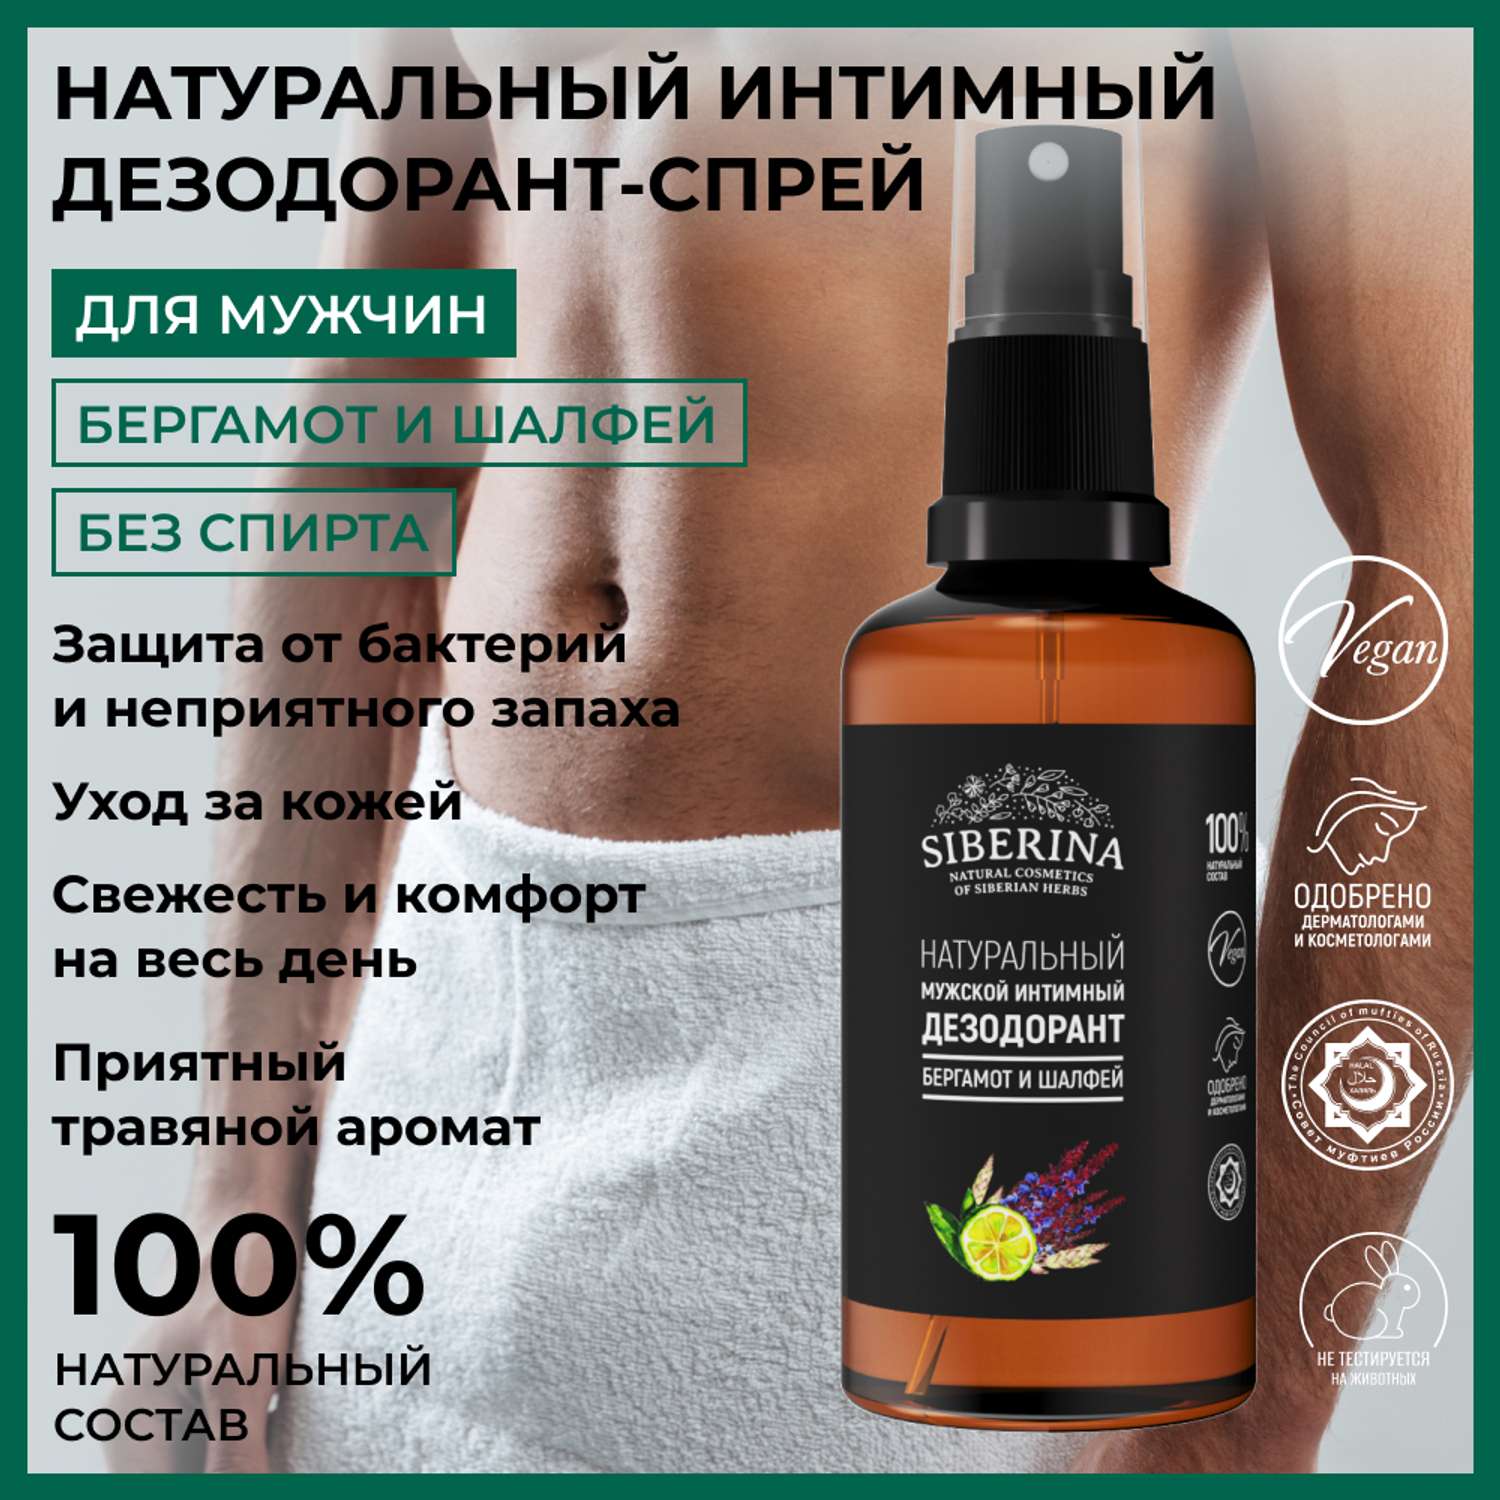 Интимный дезодорант Siberina натуральный «Бергамот и шалфей» мужской 50 мл - фото 2